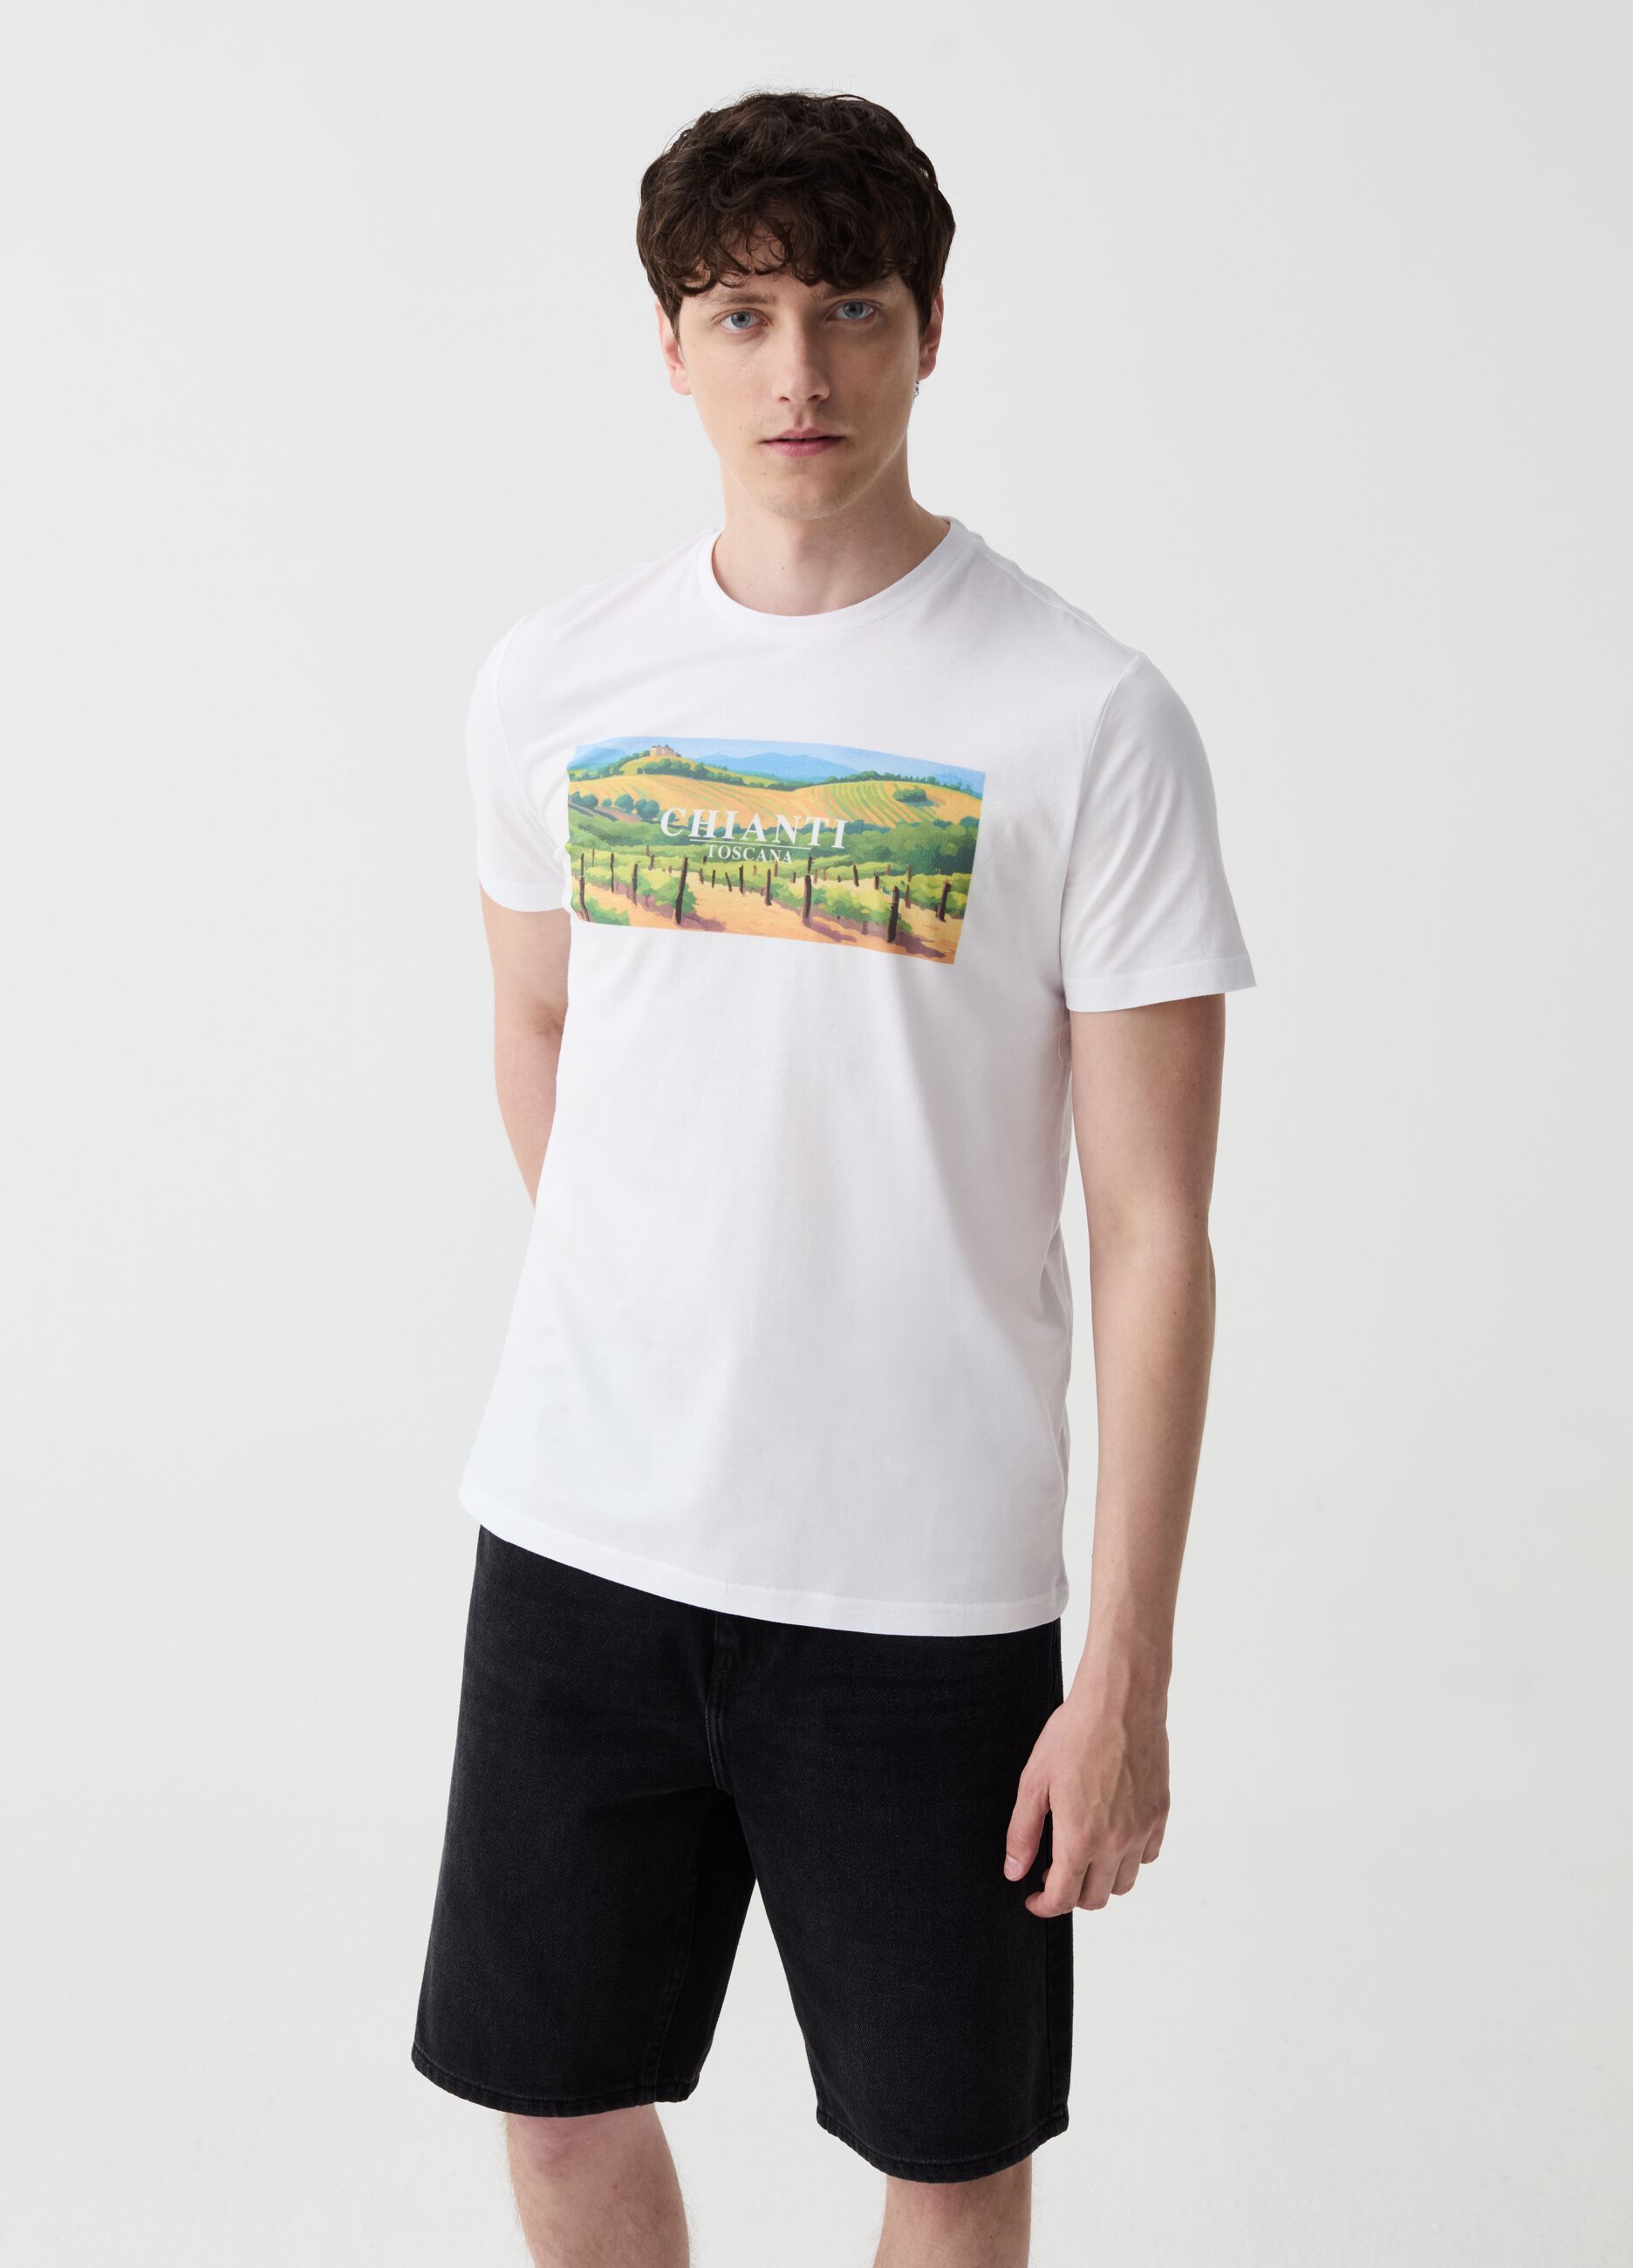 T-shirt in cotone con stampa Chianti